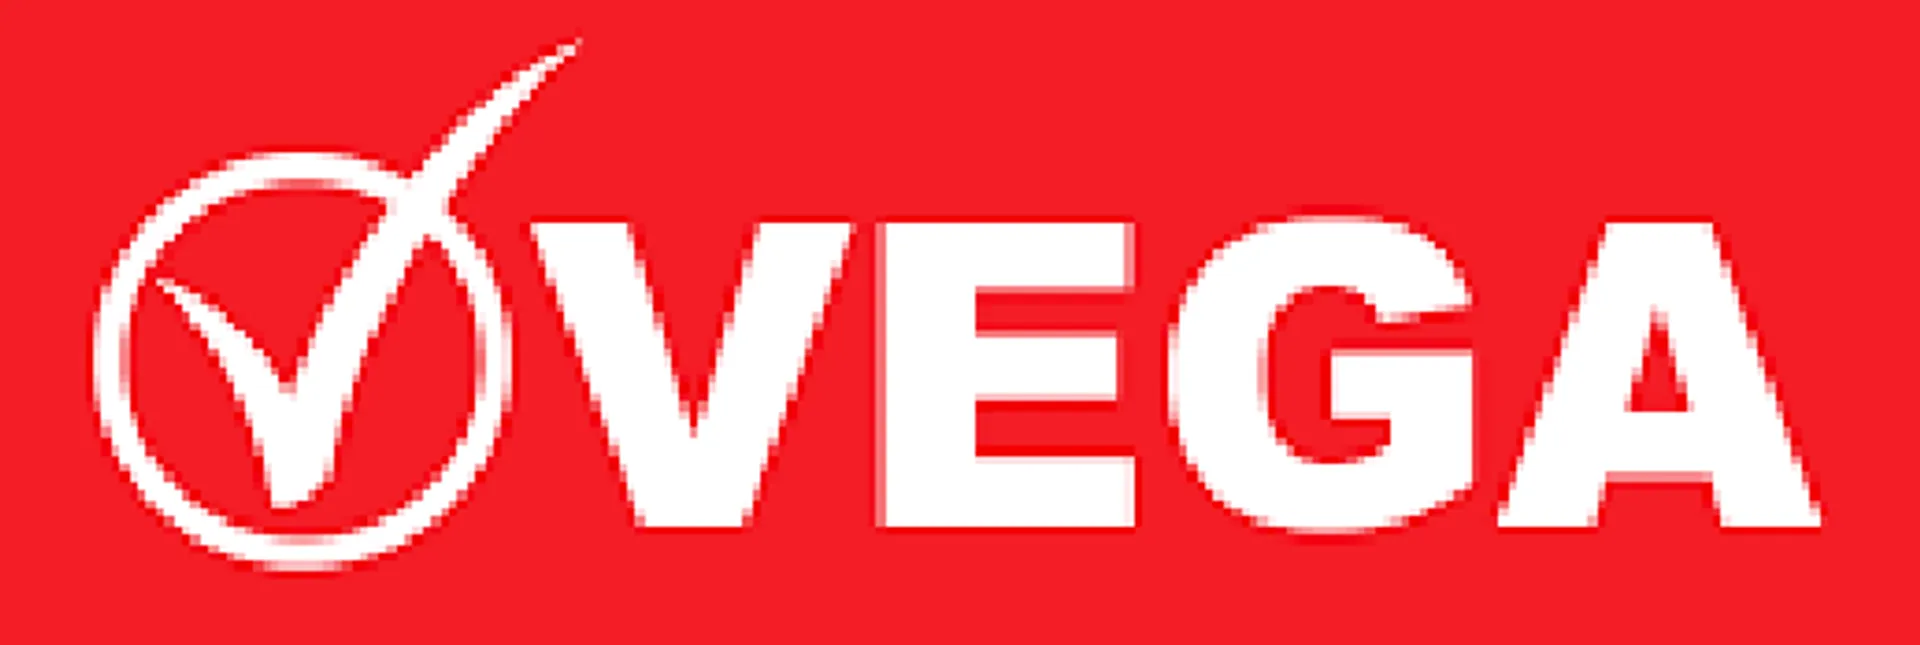 VEGA logo de catálogo